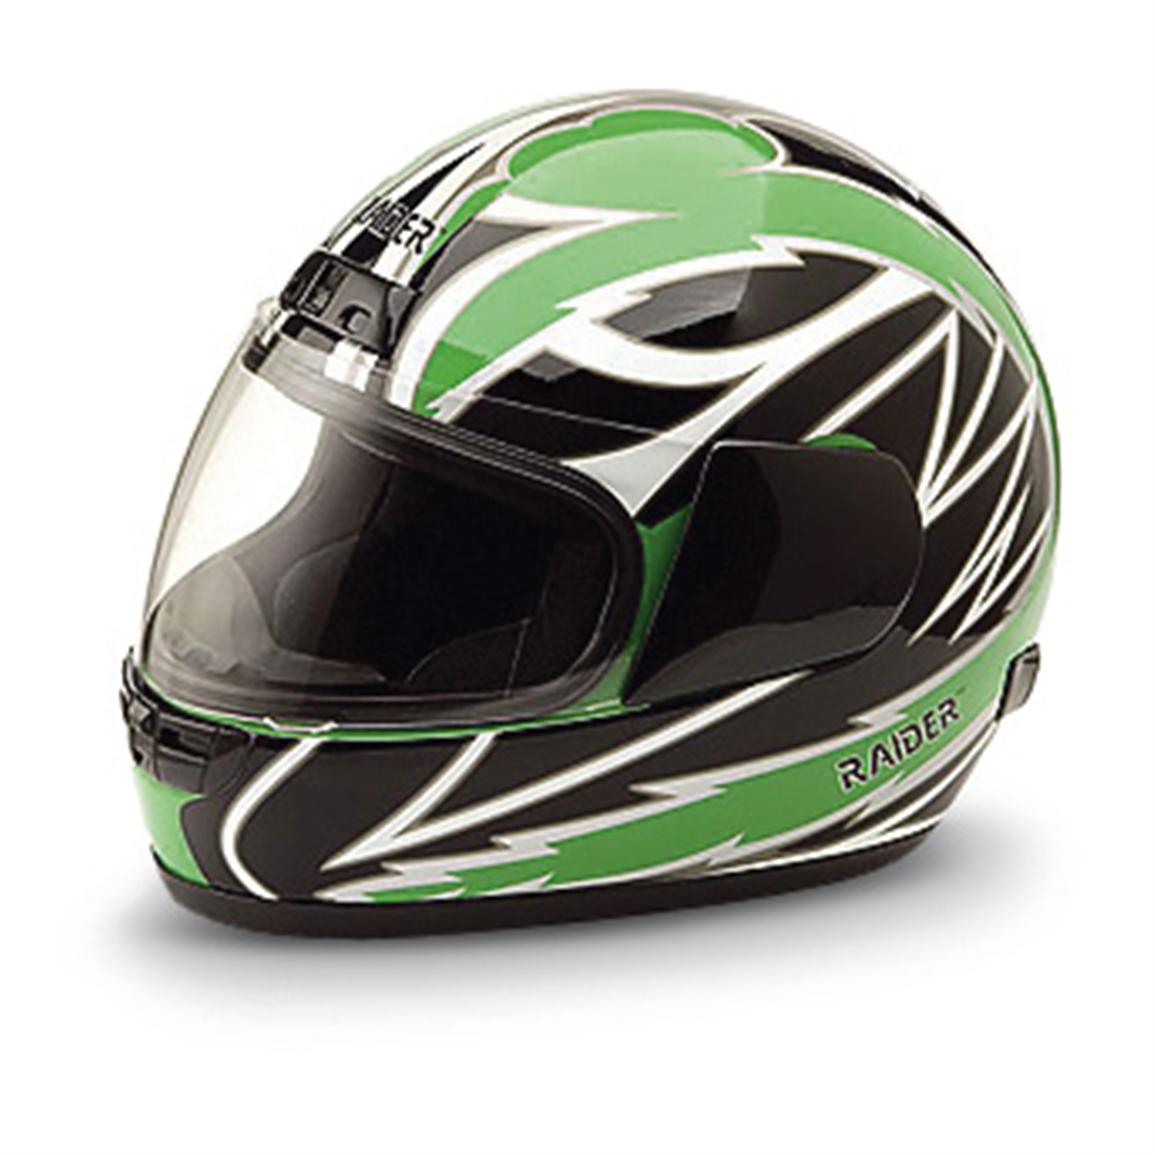 Raider™ Motorcycle Helmet - 136136, Helmets & Goggles at Sportsman's Guide